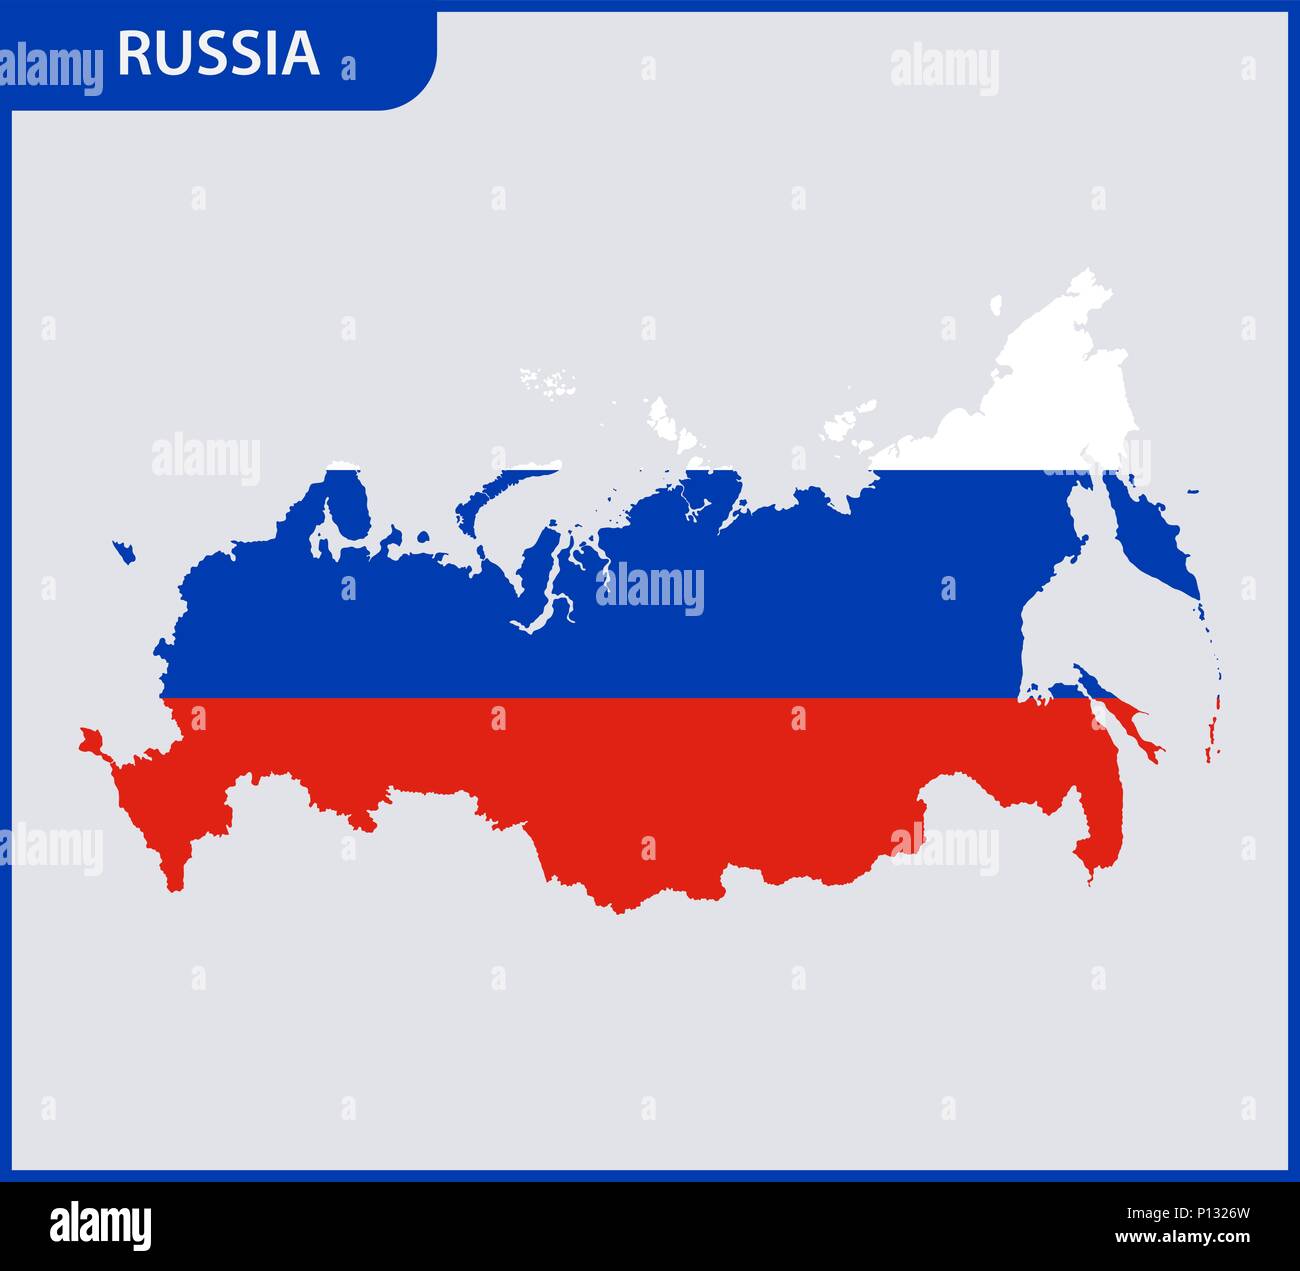 La mappa dettagliata della Russia. Federazione russa con la bandiera nazionale Illustrazione Vettoriale